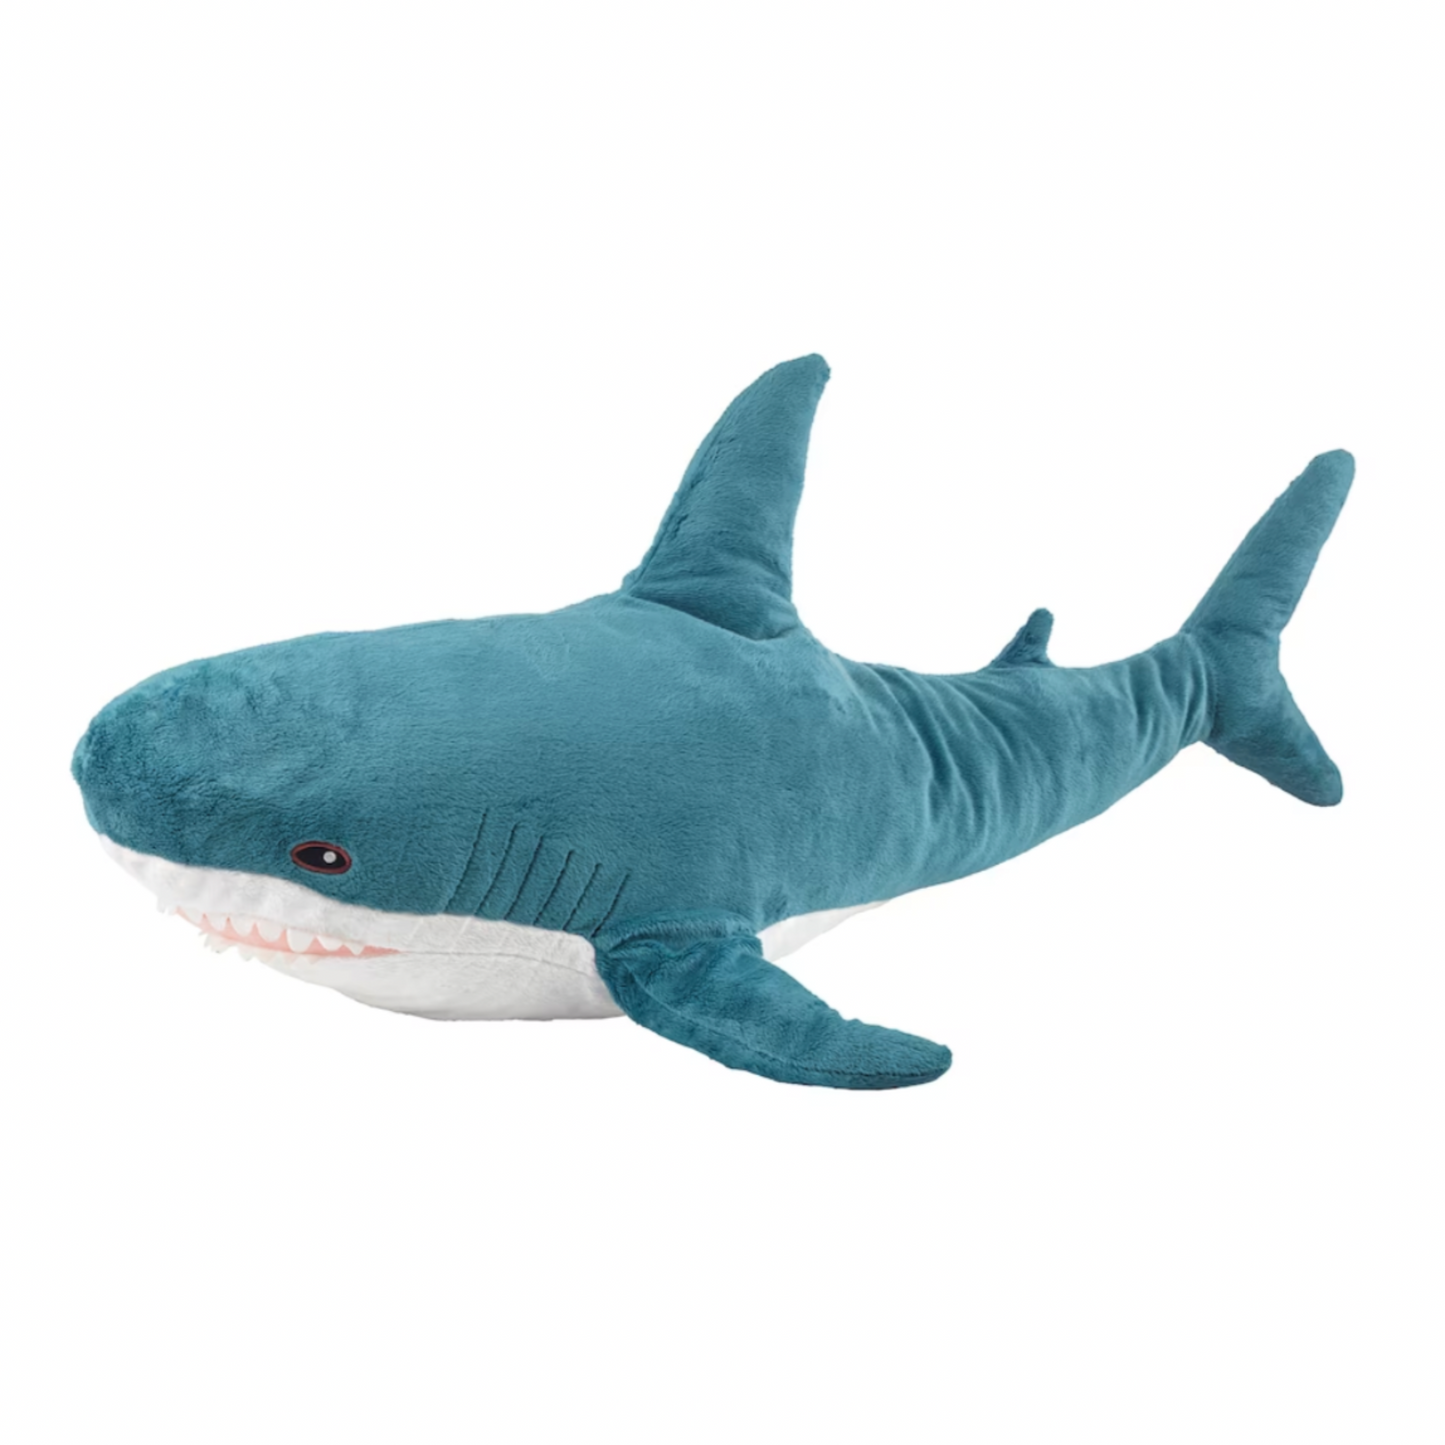 IKEA Blahaj Shark Soft Toy (4620810223681)